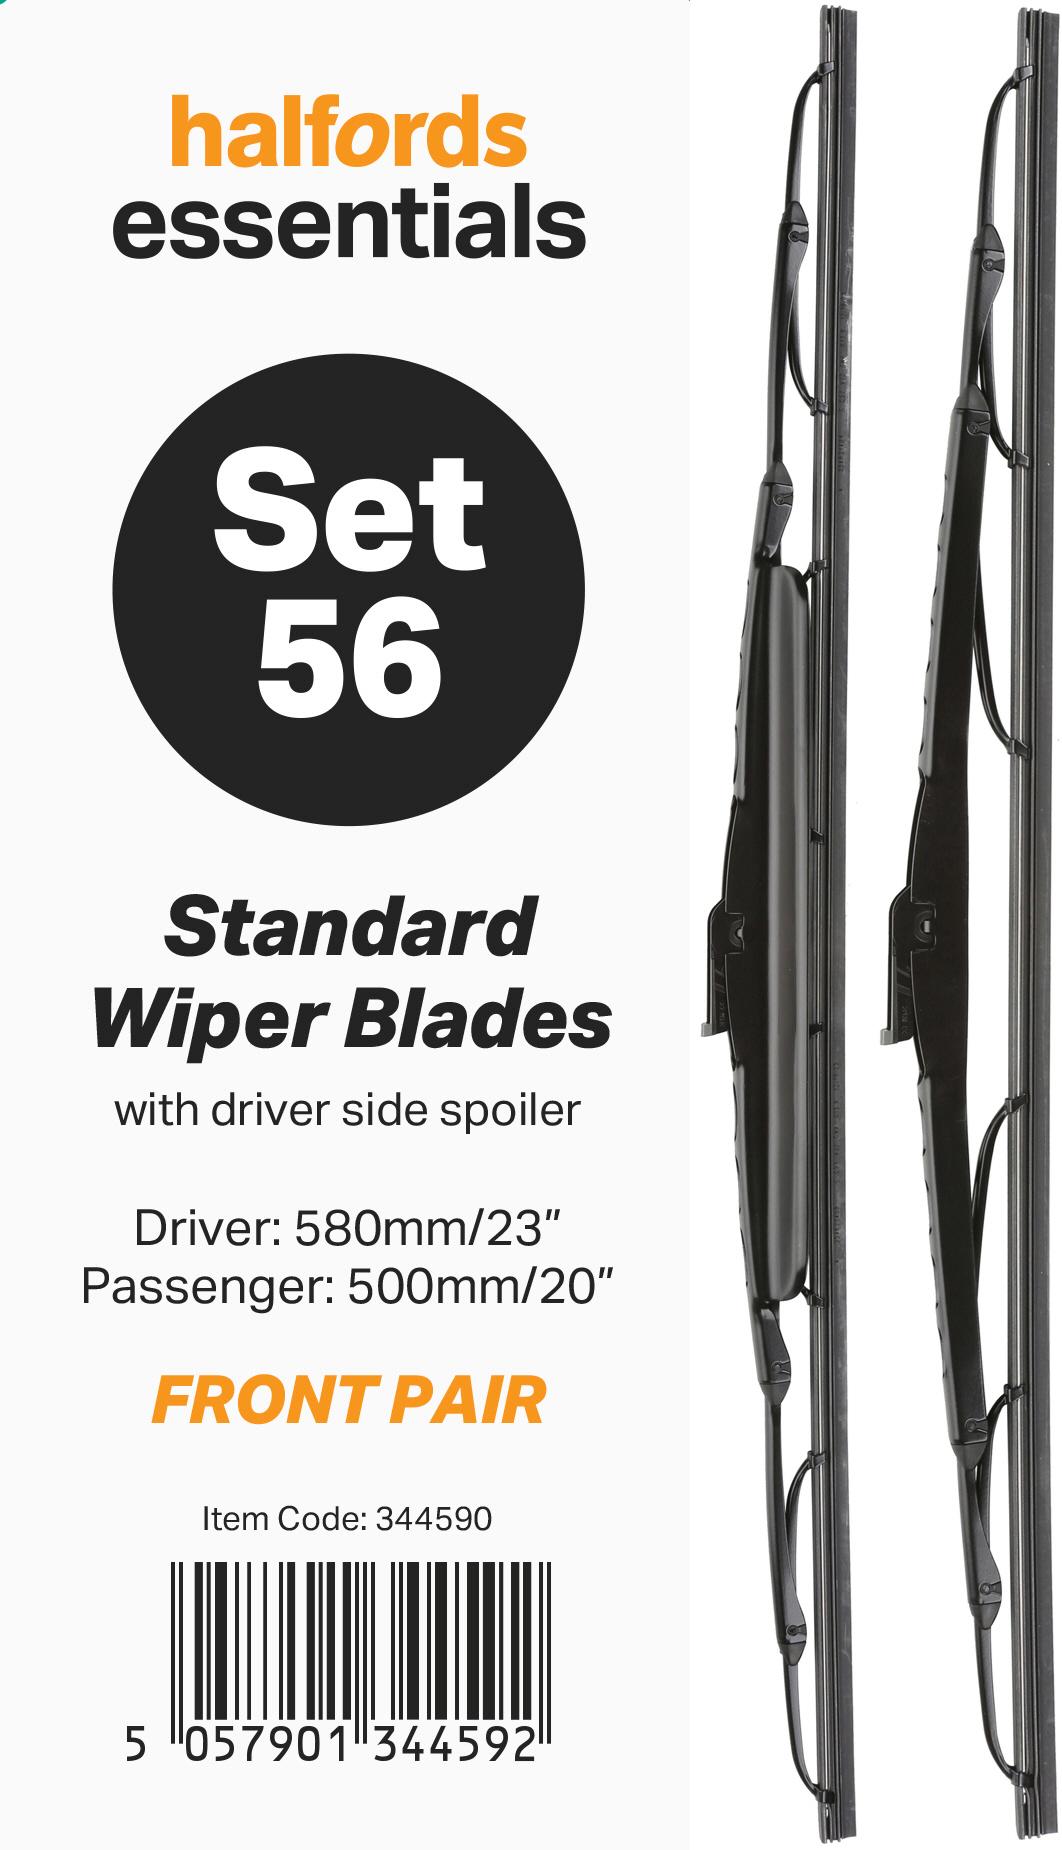 Halfords Essentials Wiper Blade Set 56